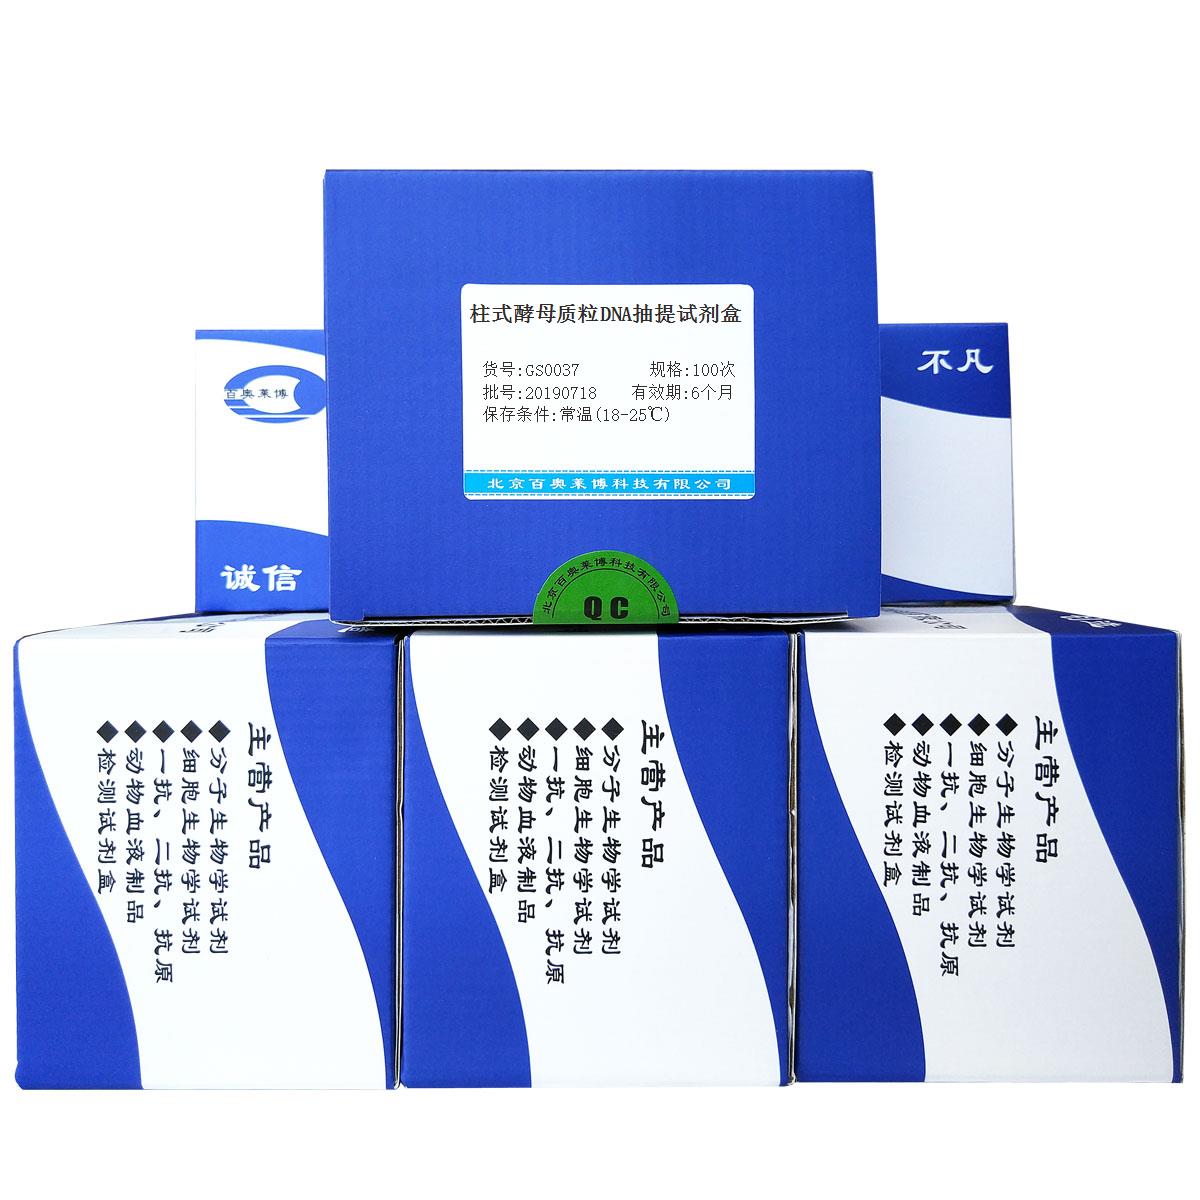 柱式酵母质粒DNA抽提试剂盒北京品牌